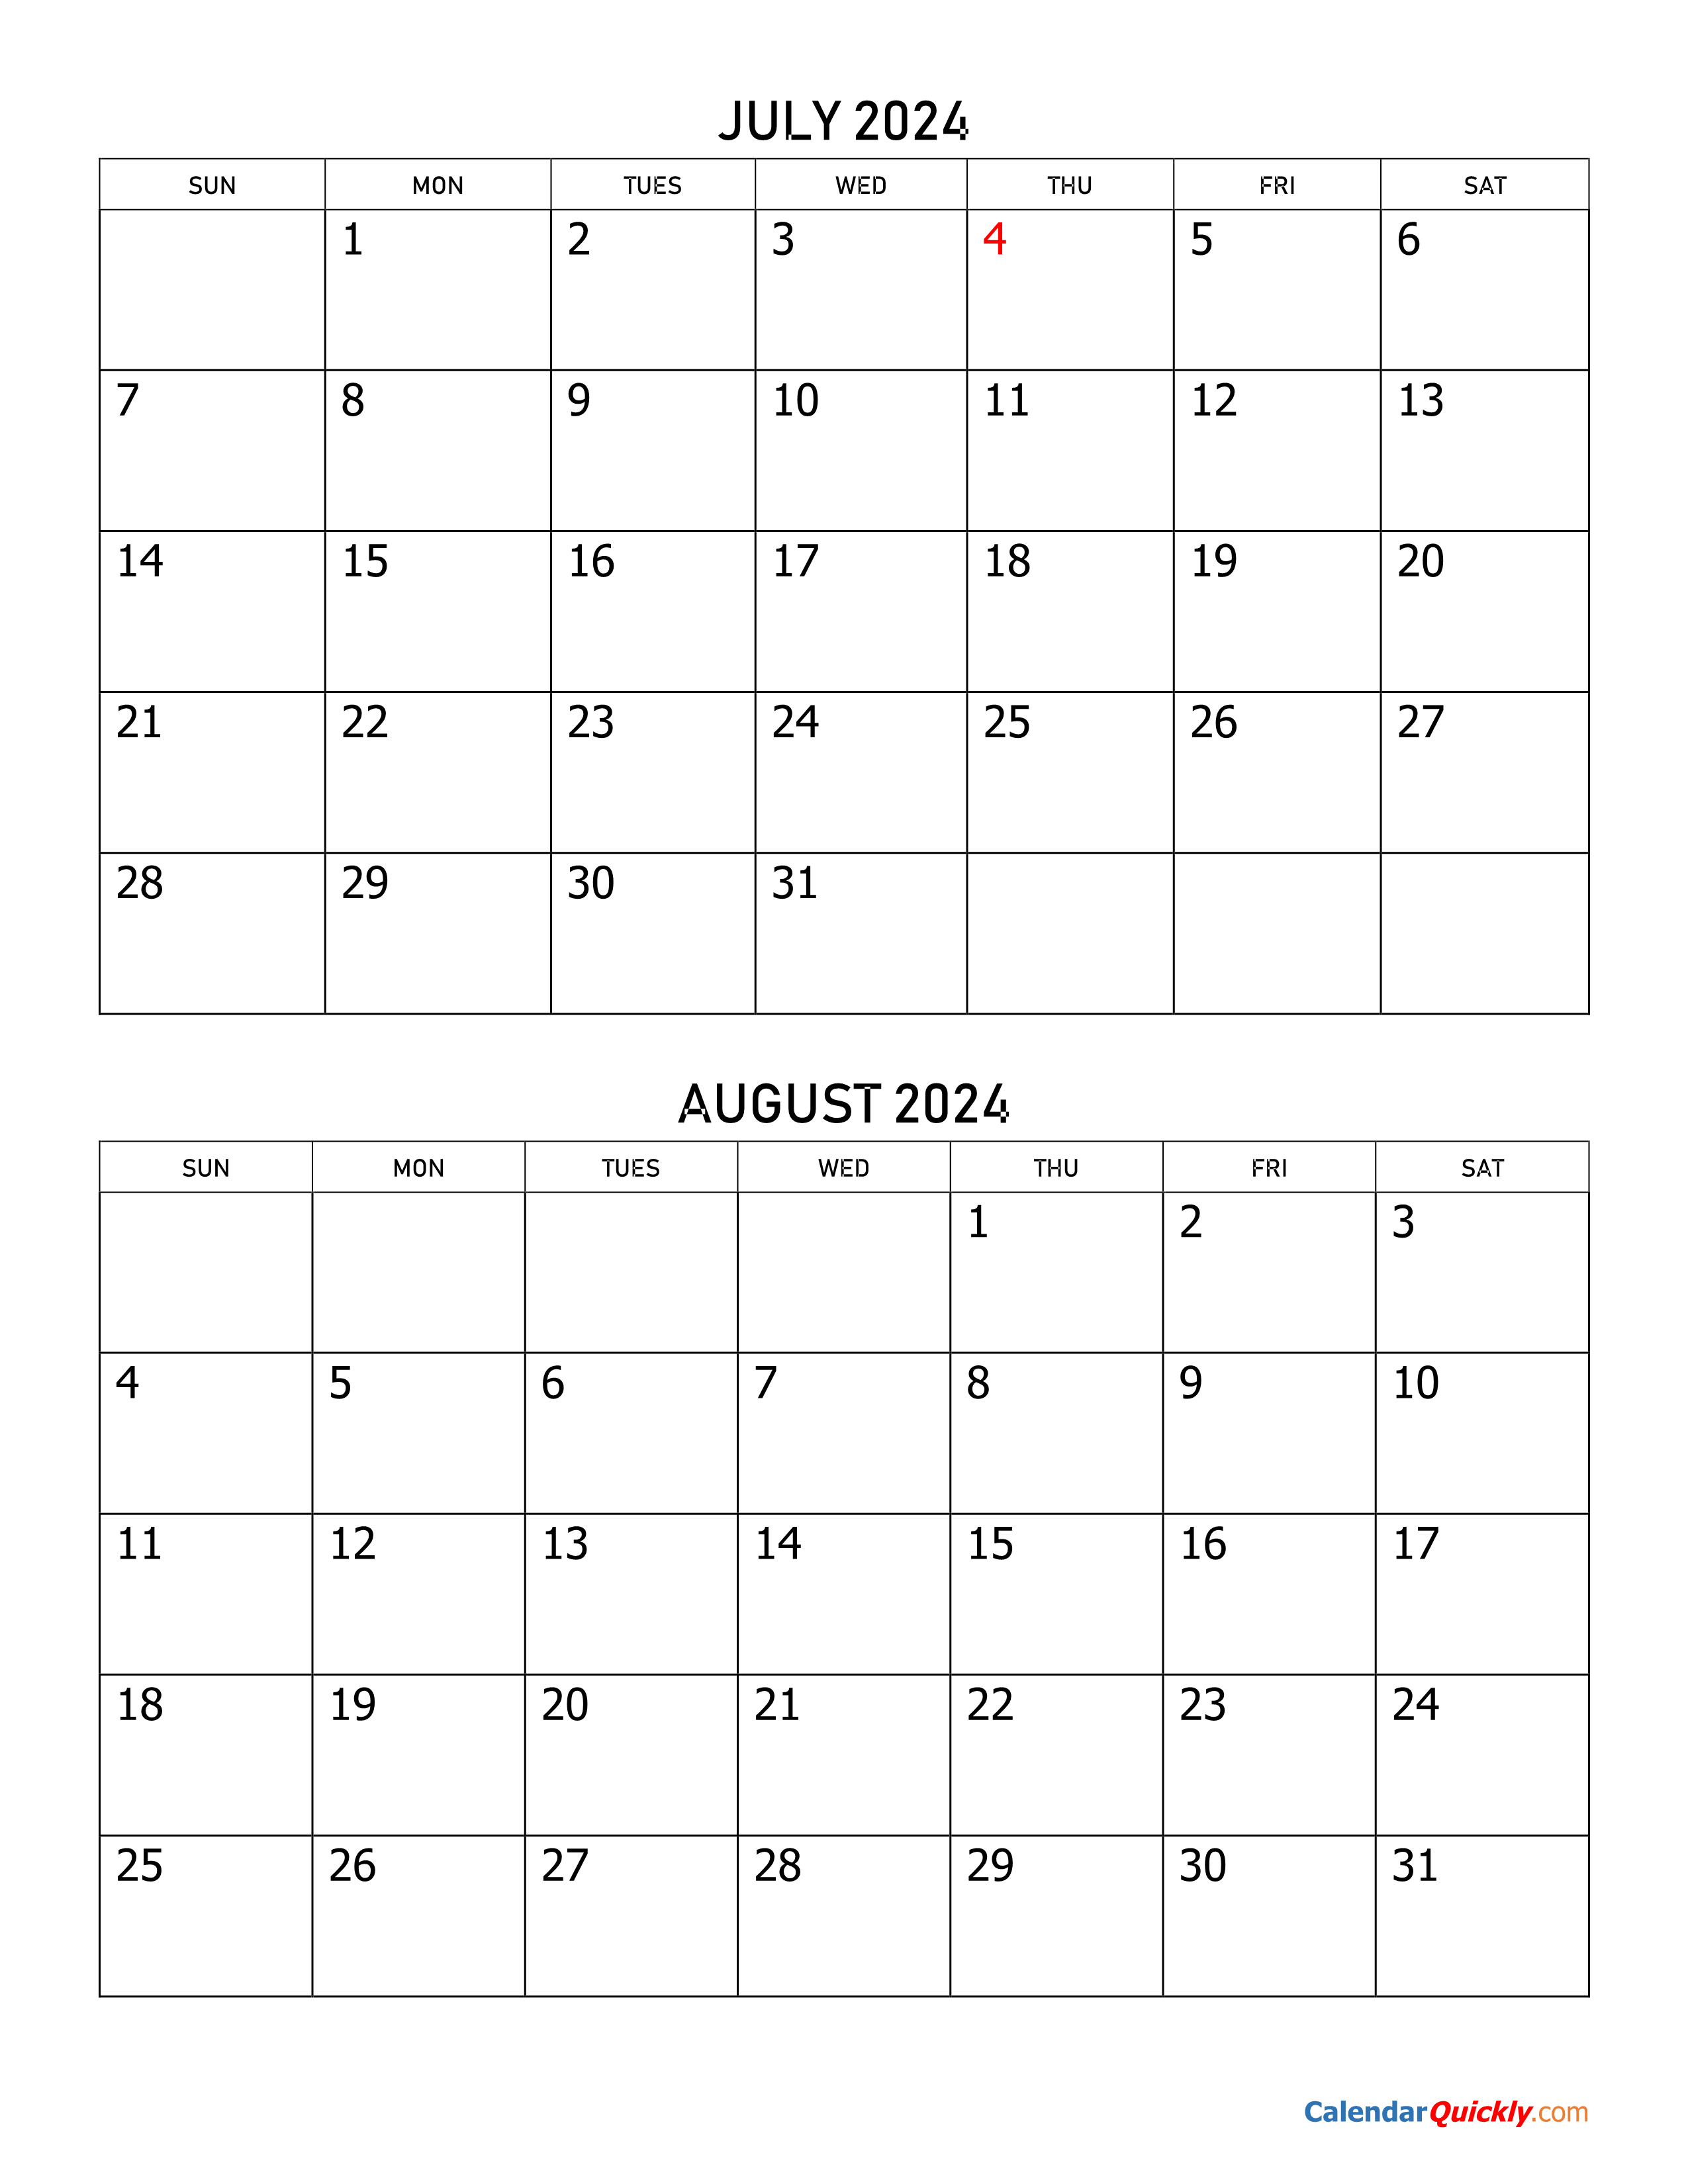 calendar-july-2024-august-2024-calendar-2024